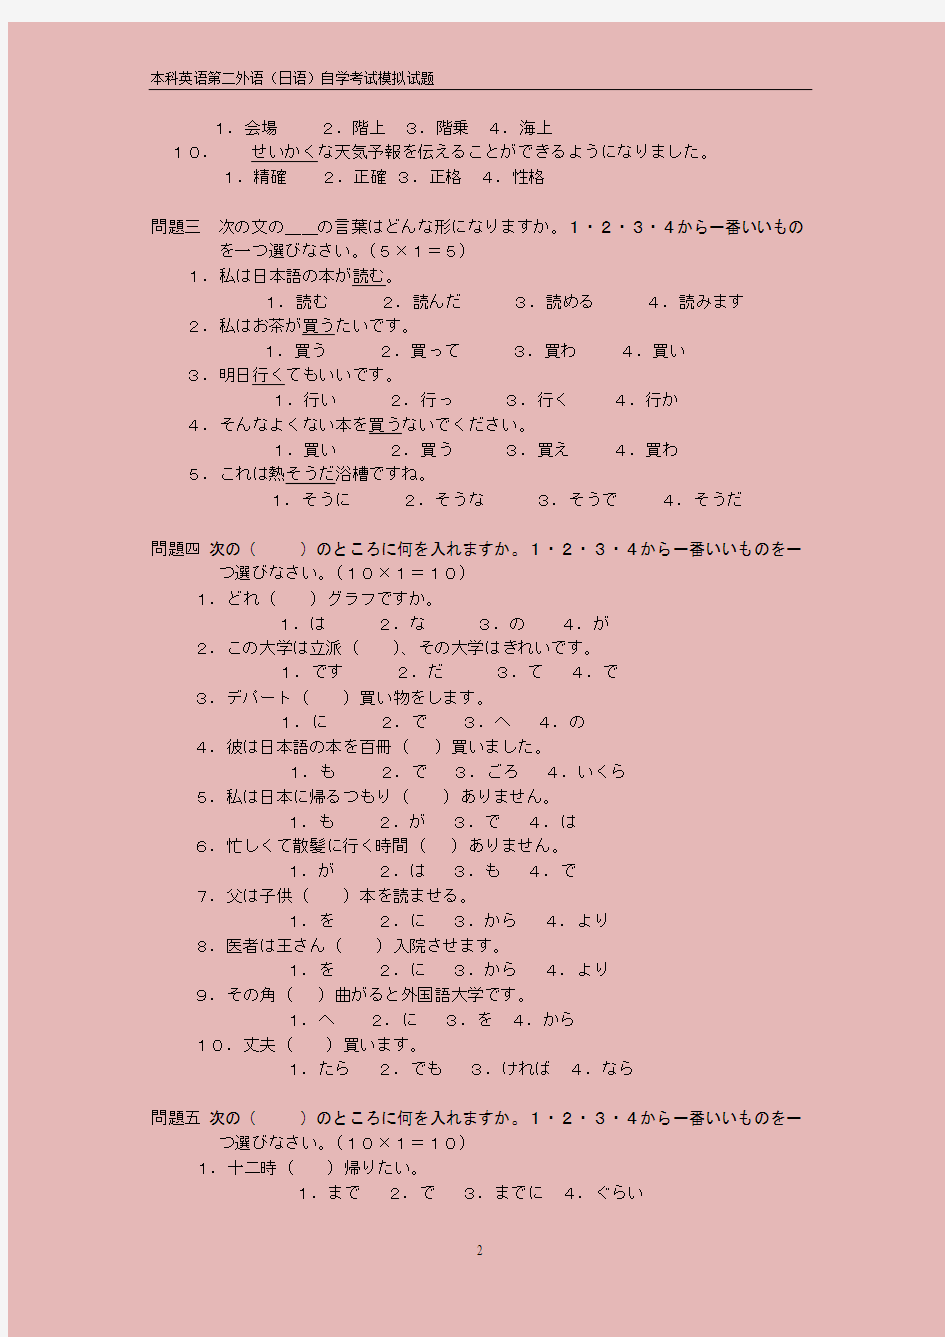 本科第二外语日语自学考试模拟试题